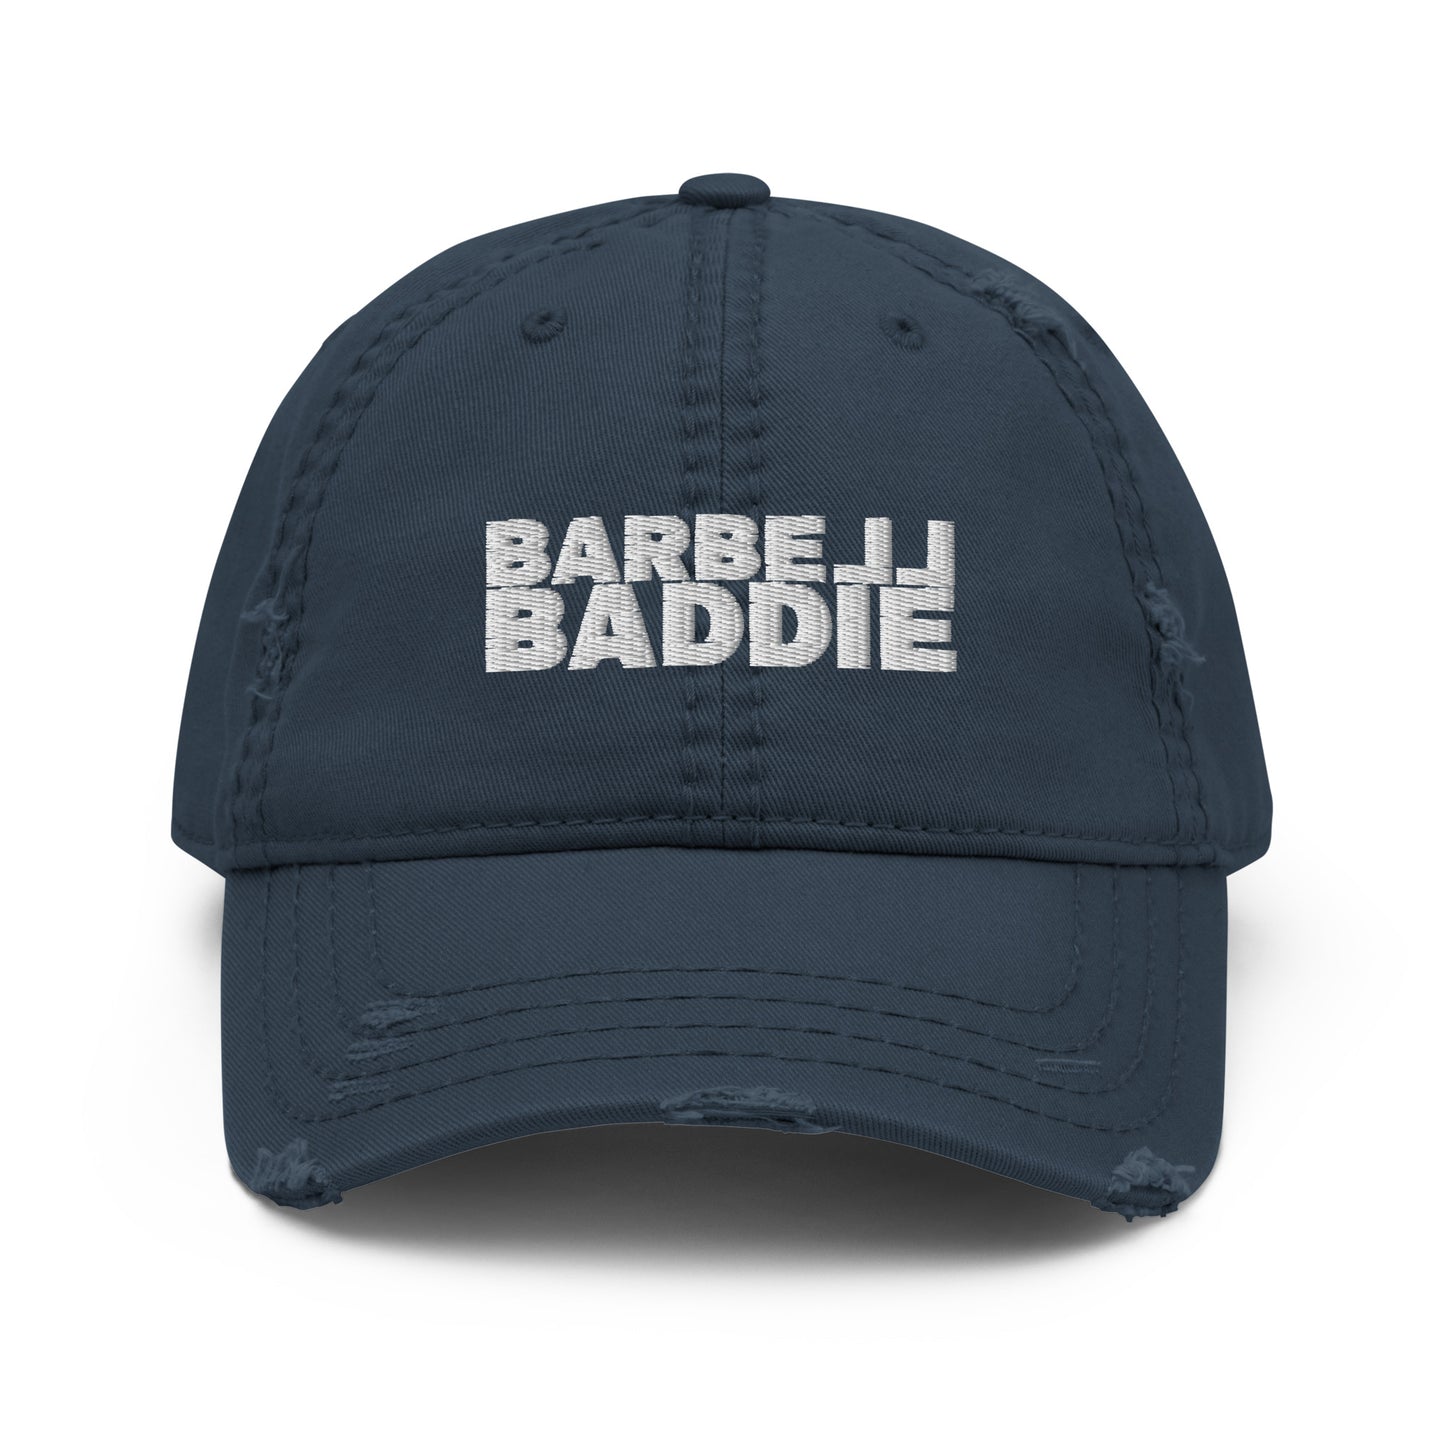 Barbell Baddie Distressed Dad Hat